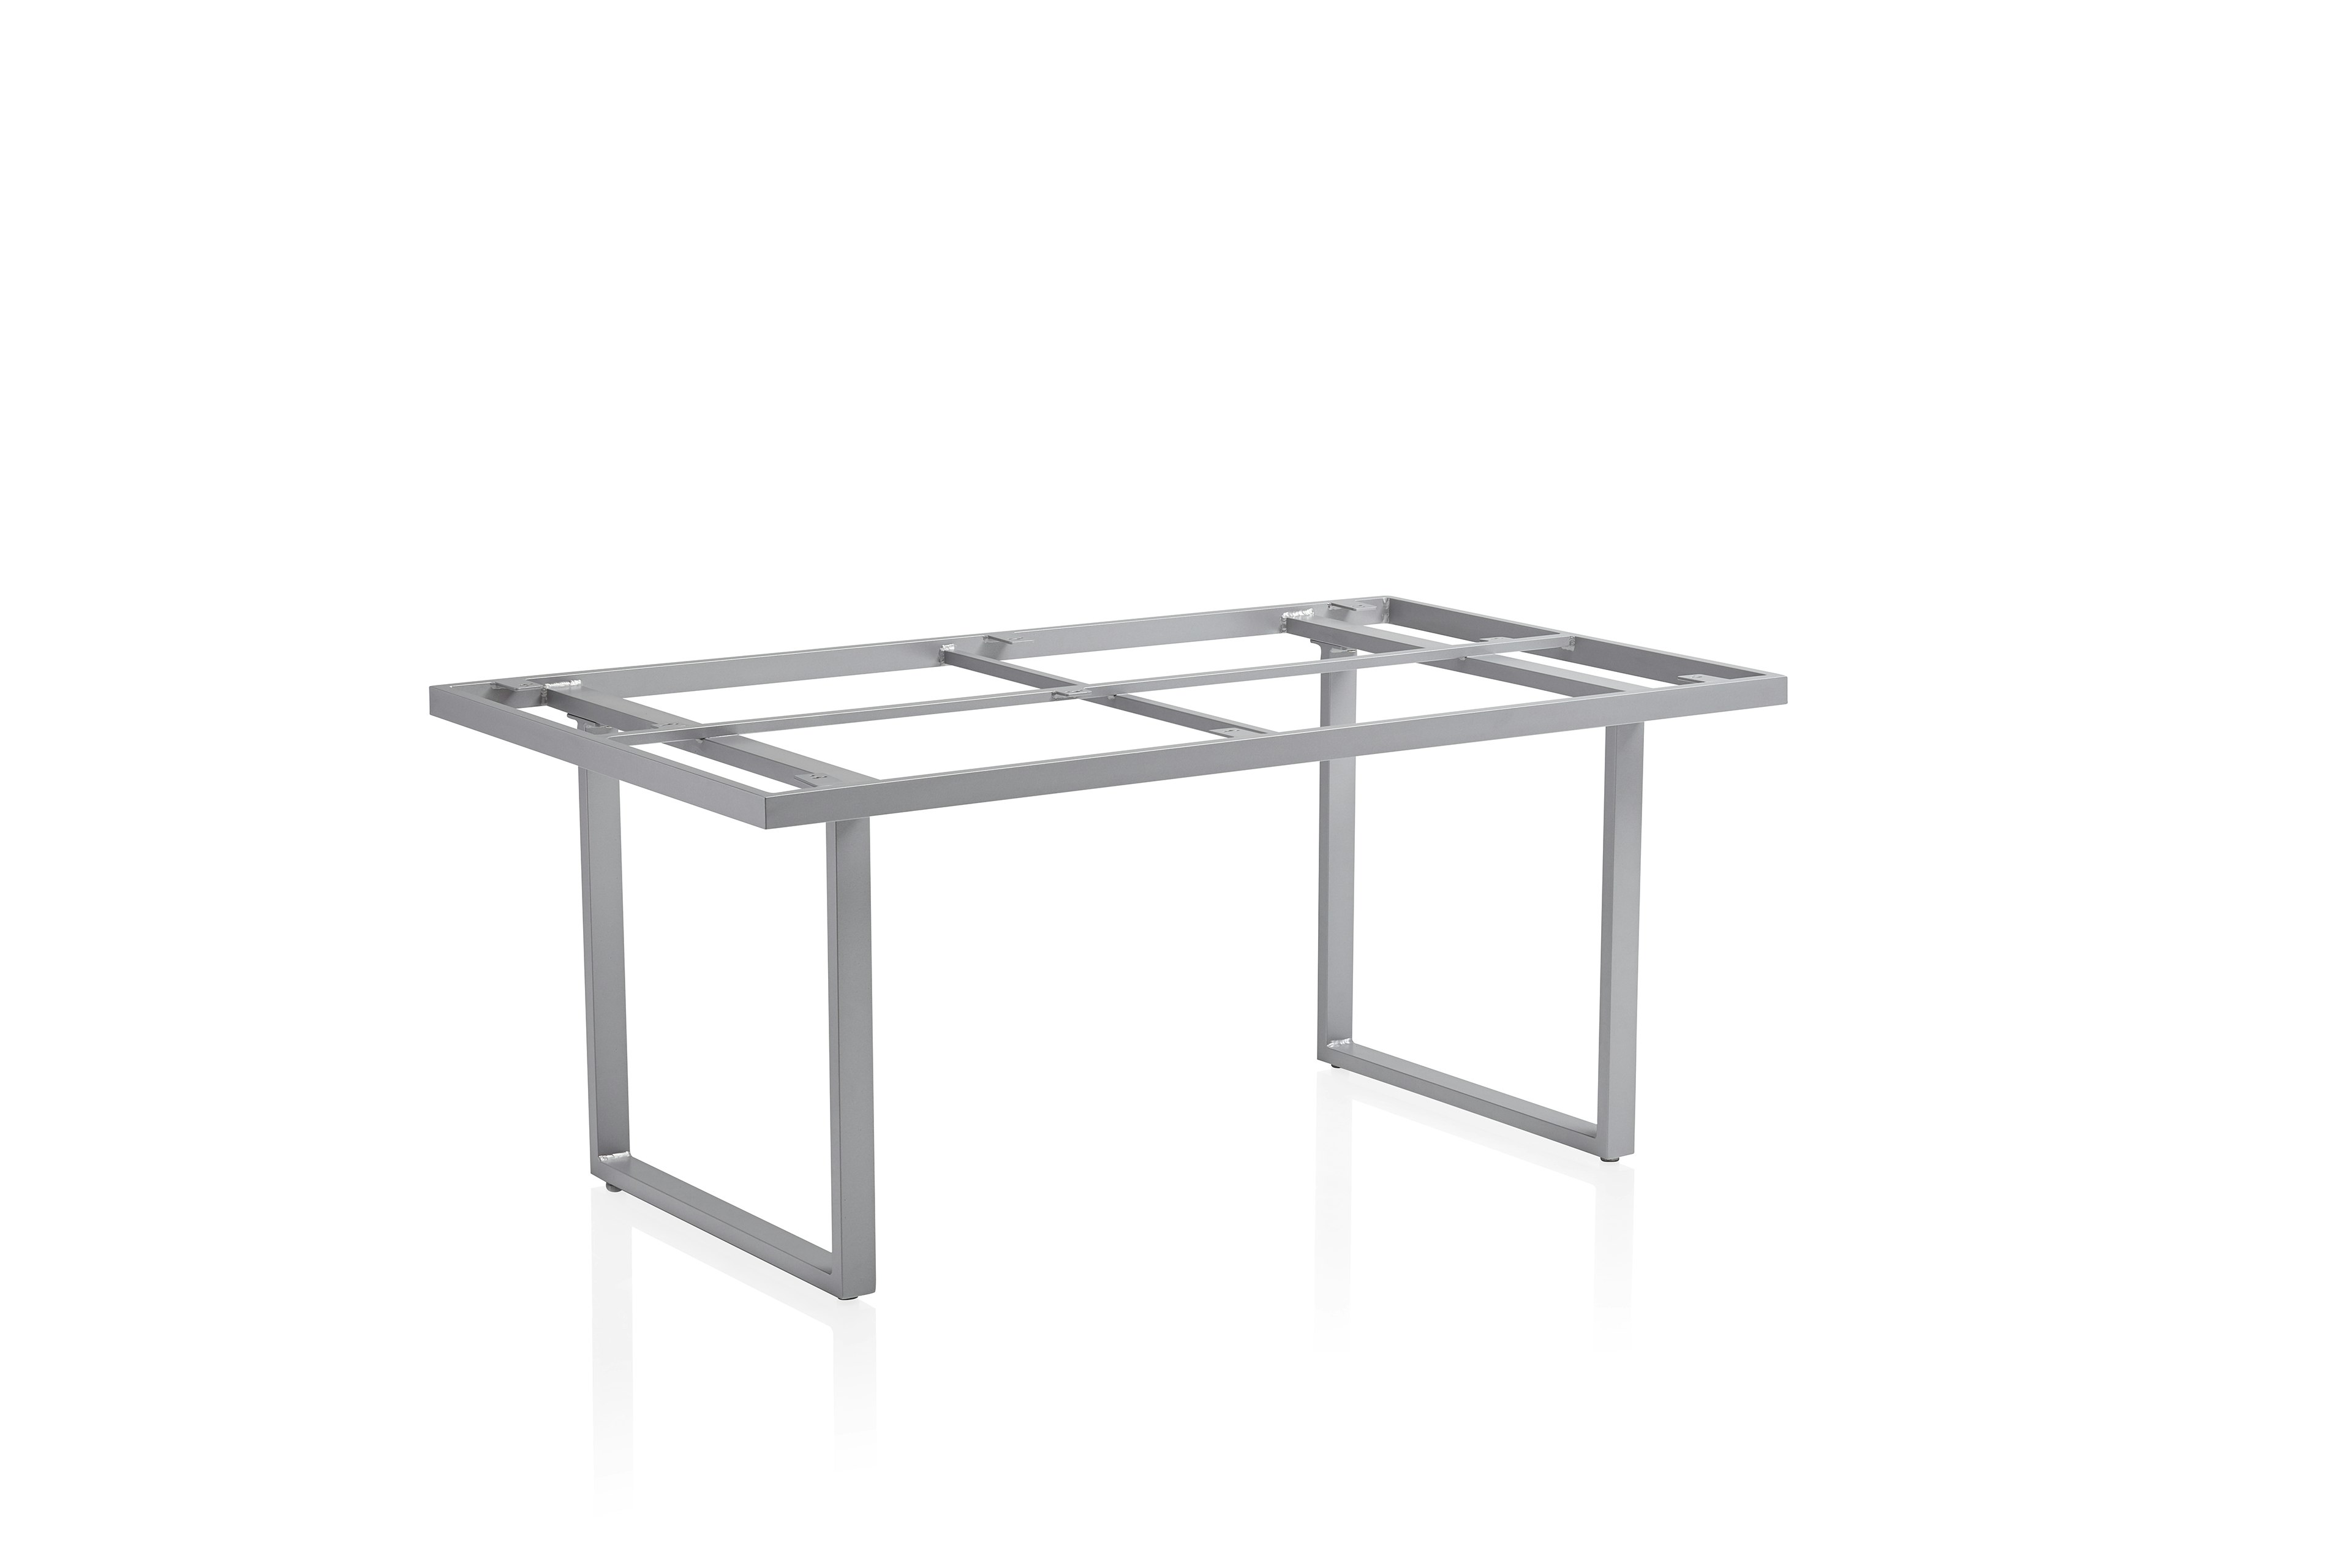 Kettler Casual Dining Tischgestell SKATE, Aluminium, verschiedene Farben und Größen